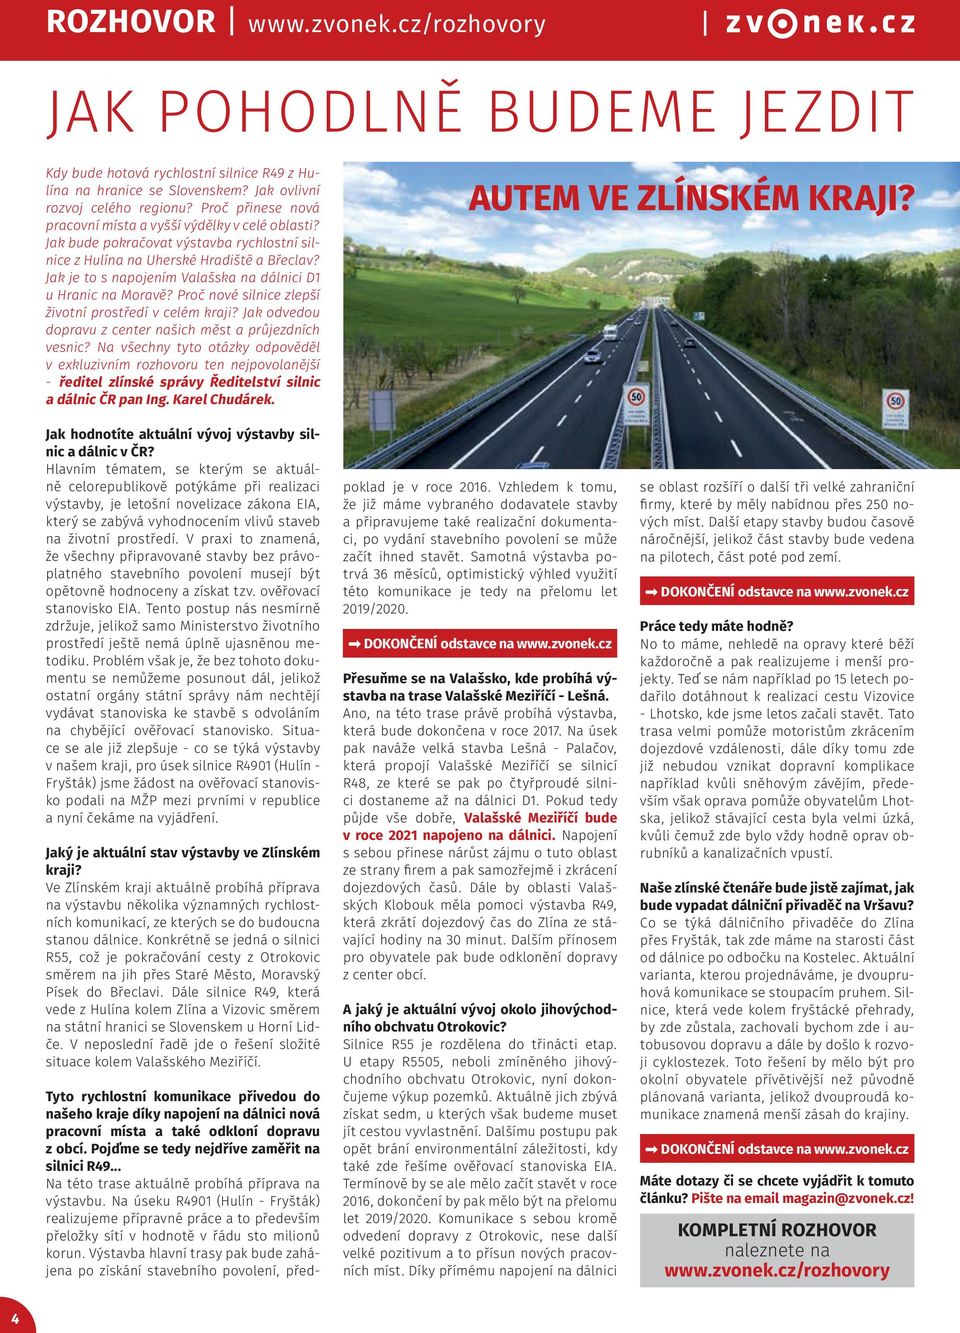 Jak je to s napojením Valašska na dálnici D1 u Hranic na Moravě? Proč nové silnice zlepší životní prostředí v celém kraji? Jak odvedou dopravu z center našich měst a průjezdních vesnic?